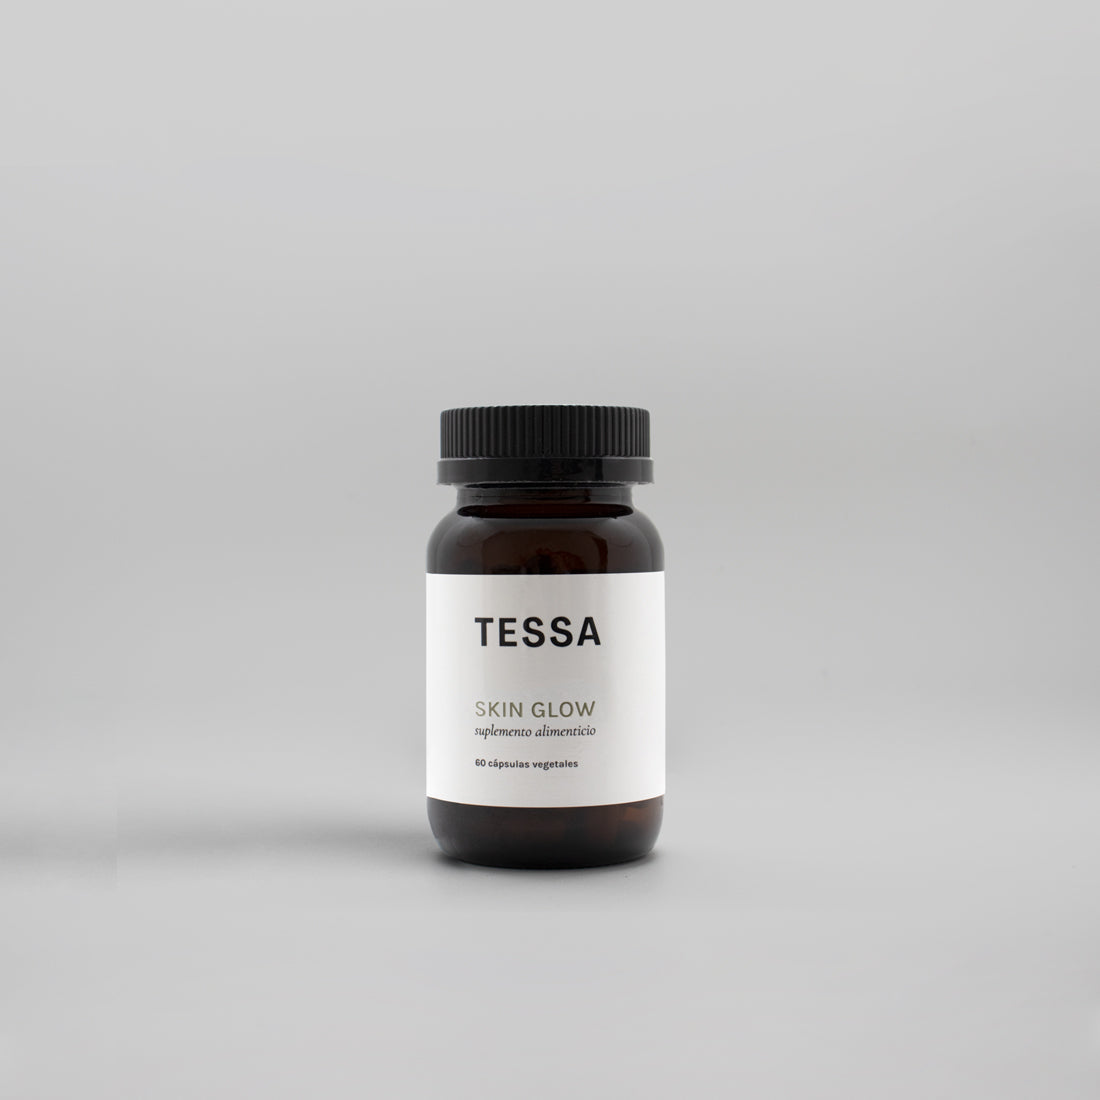 Suplemento alimenticio Skin Glow, TESSA